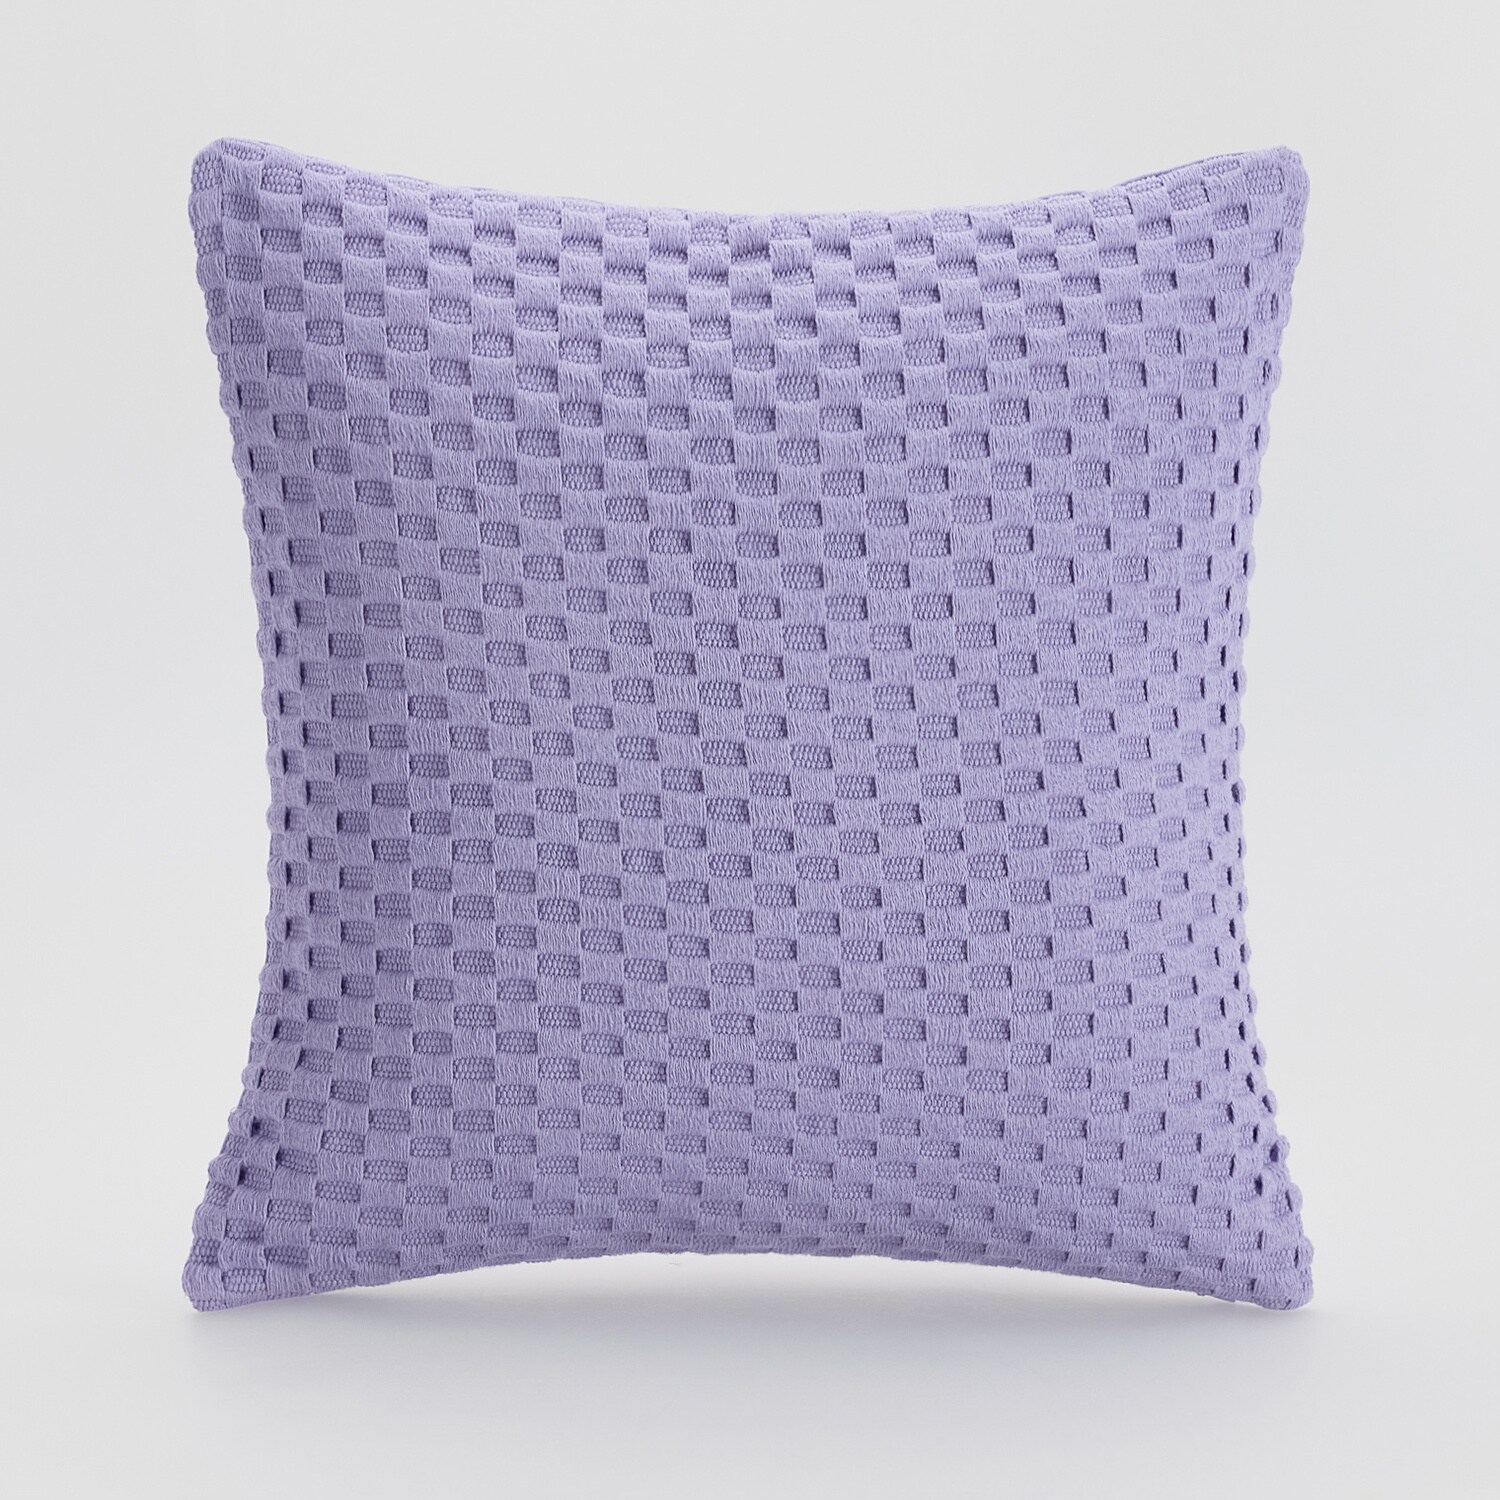 Reserved – Față de pernă din tricot cu textură gofrată – Violet bedroom imagine noua gjx.ro